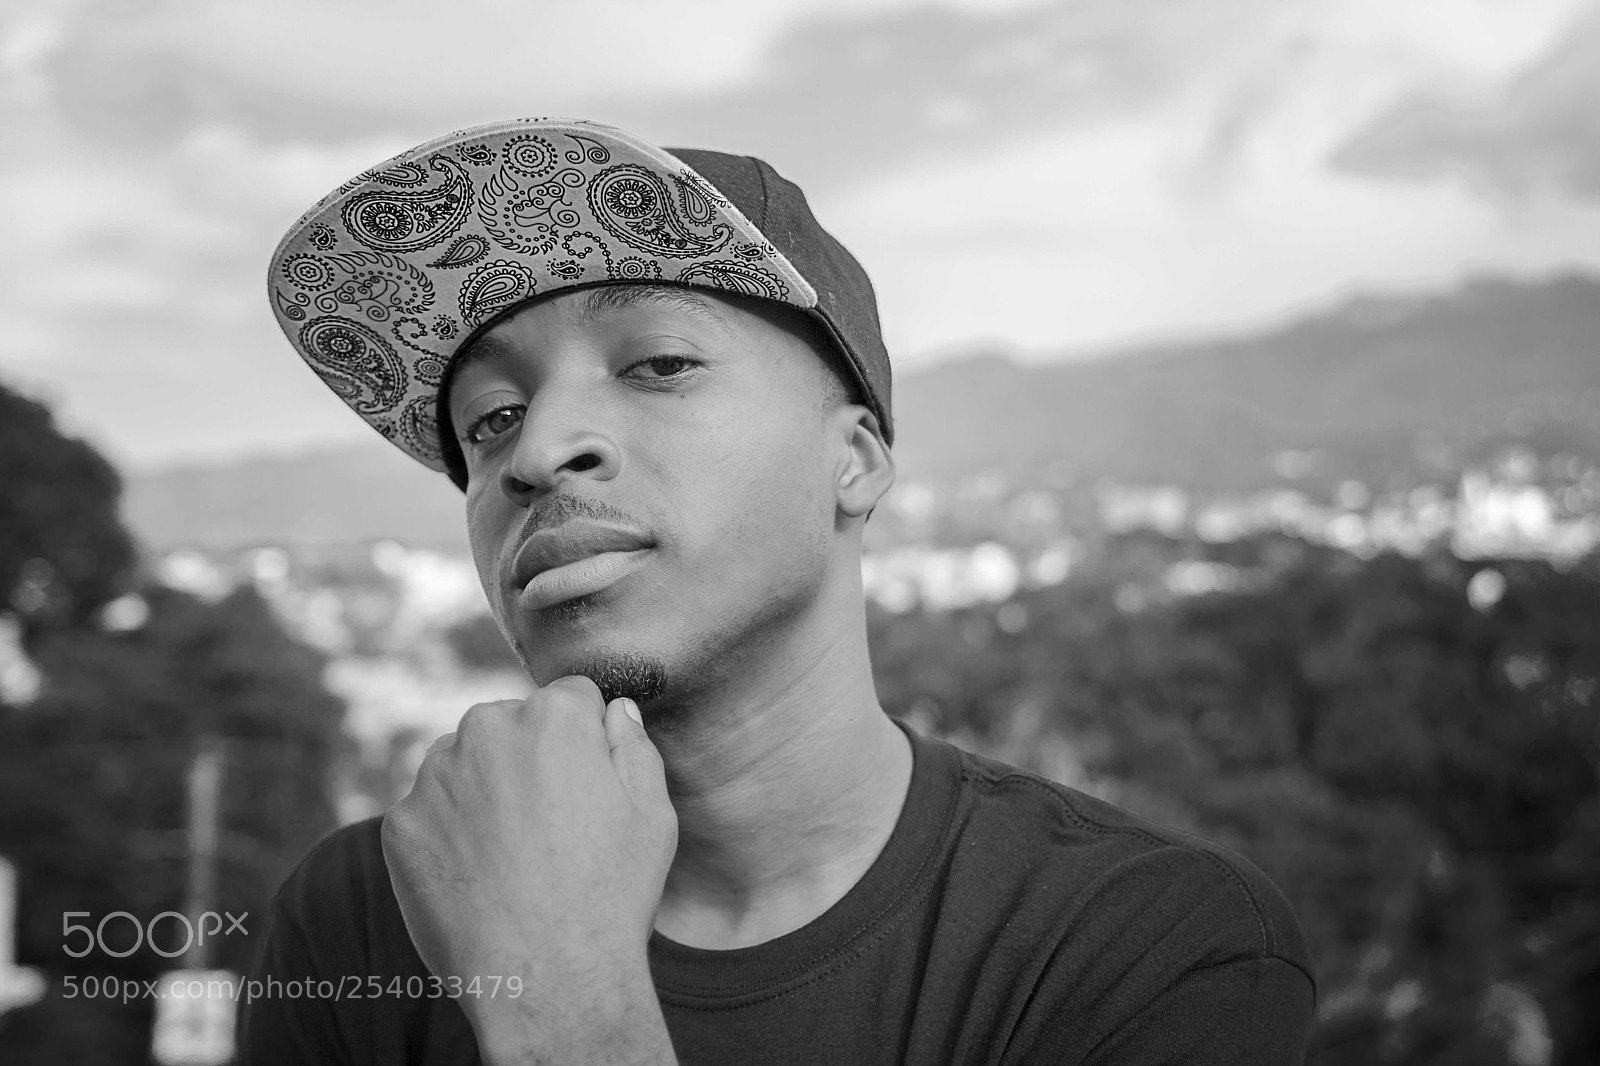 Canon EOS 7D sample photo. Ed daliriks, haitian hip-hop photography